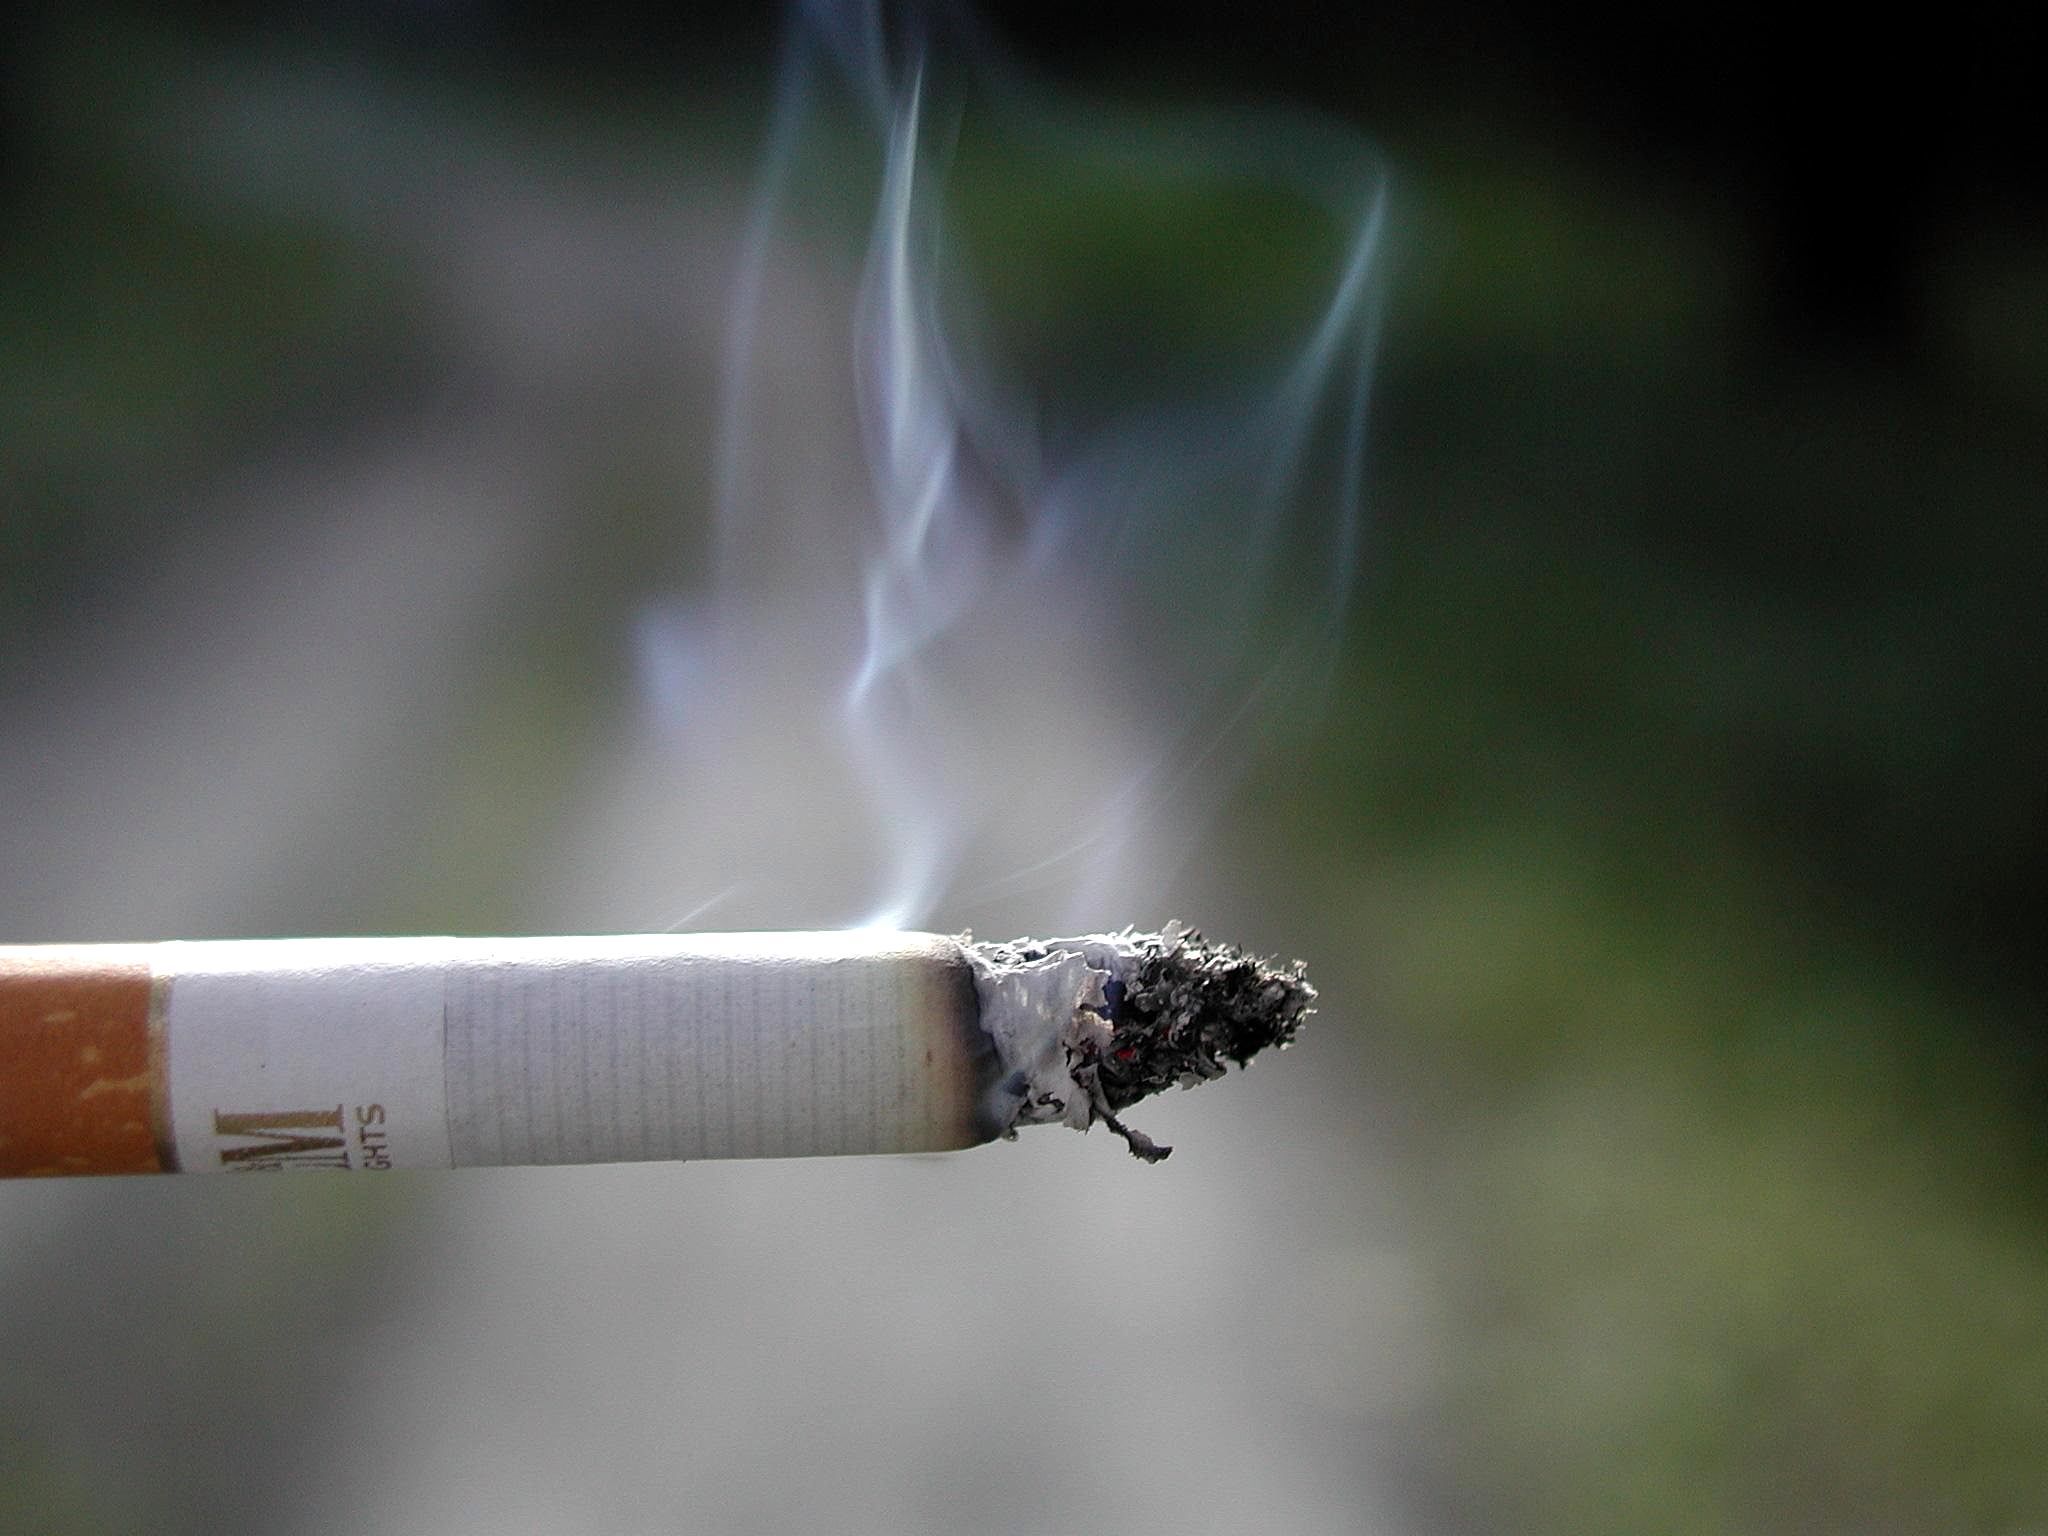 Governo aprova proibição de fumo em espaços públicos fechados